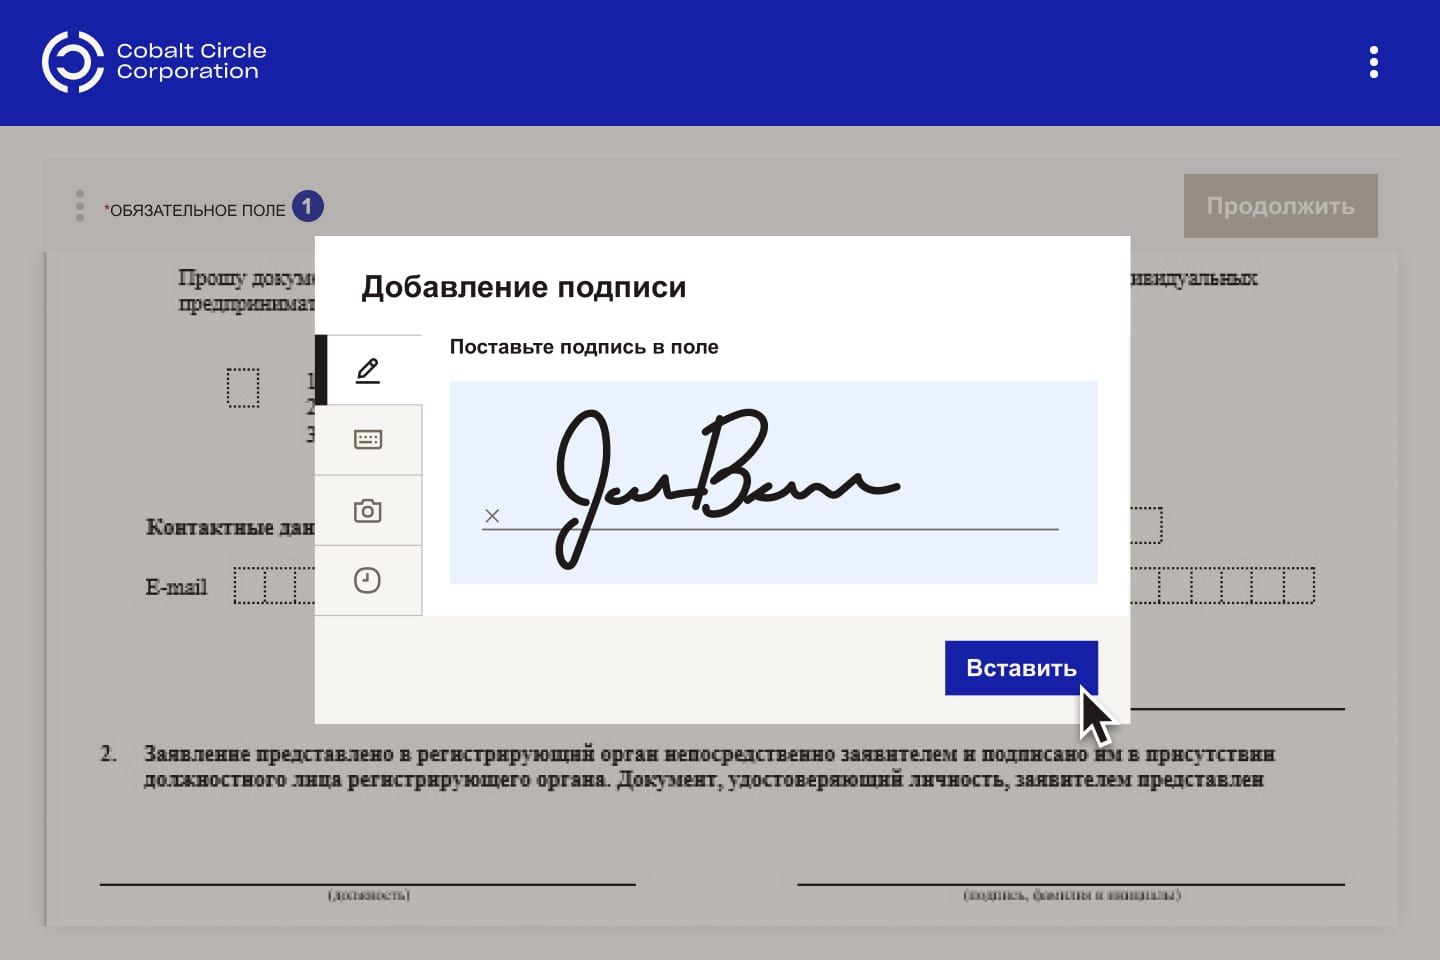 Пользователь добавляет свою электронную подпись в документ